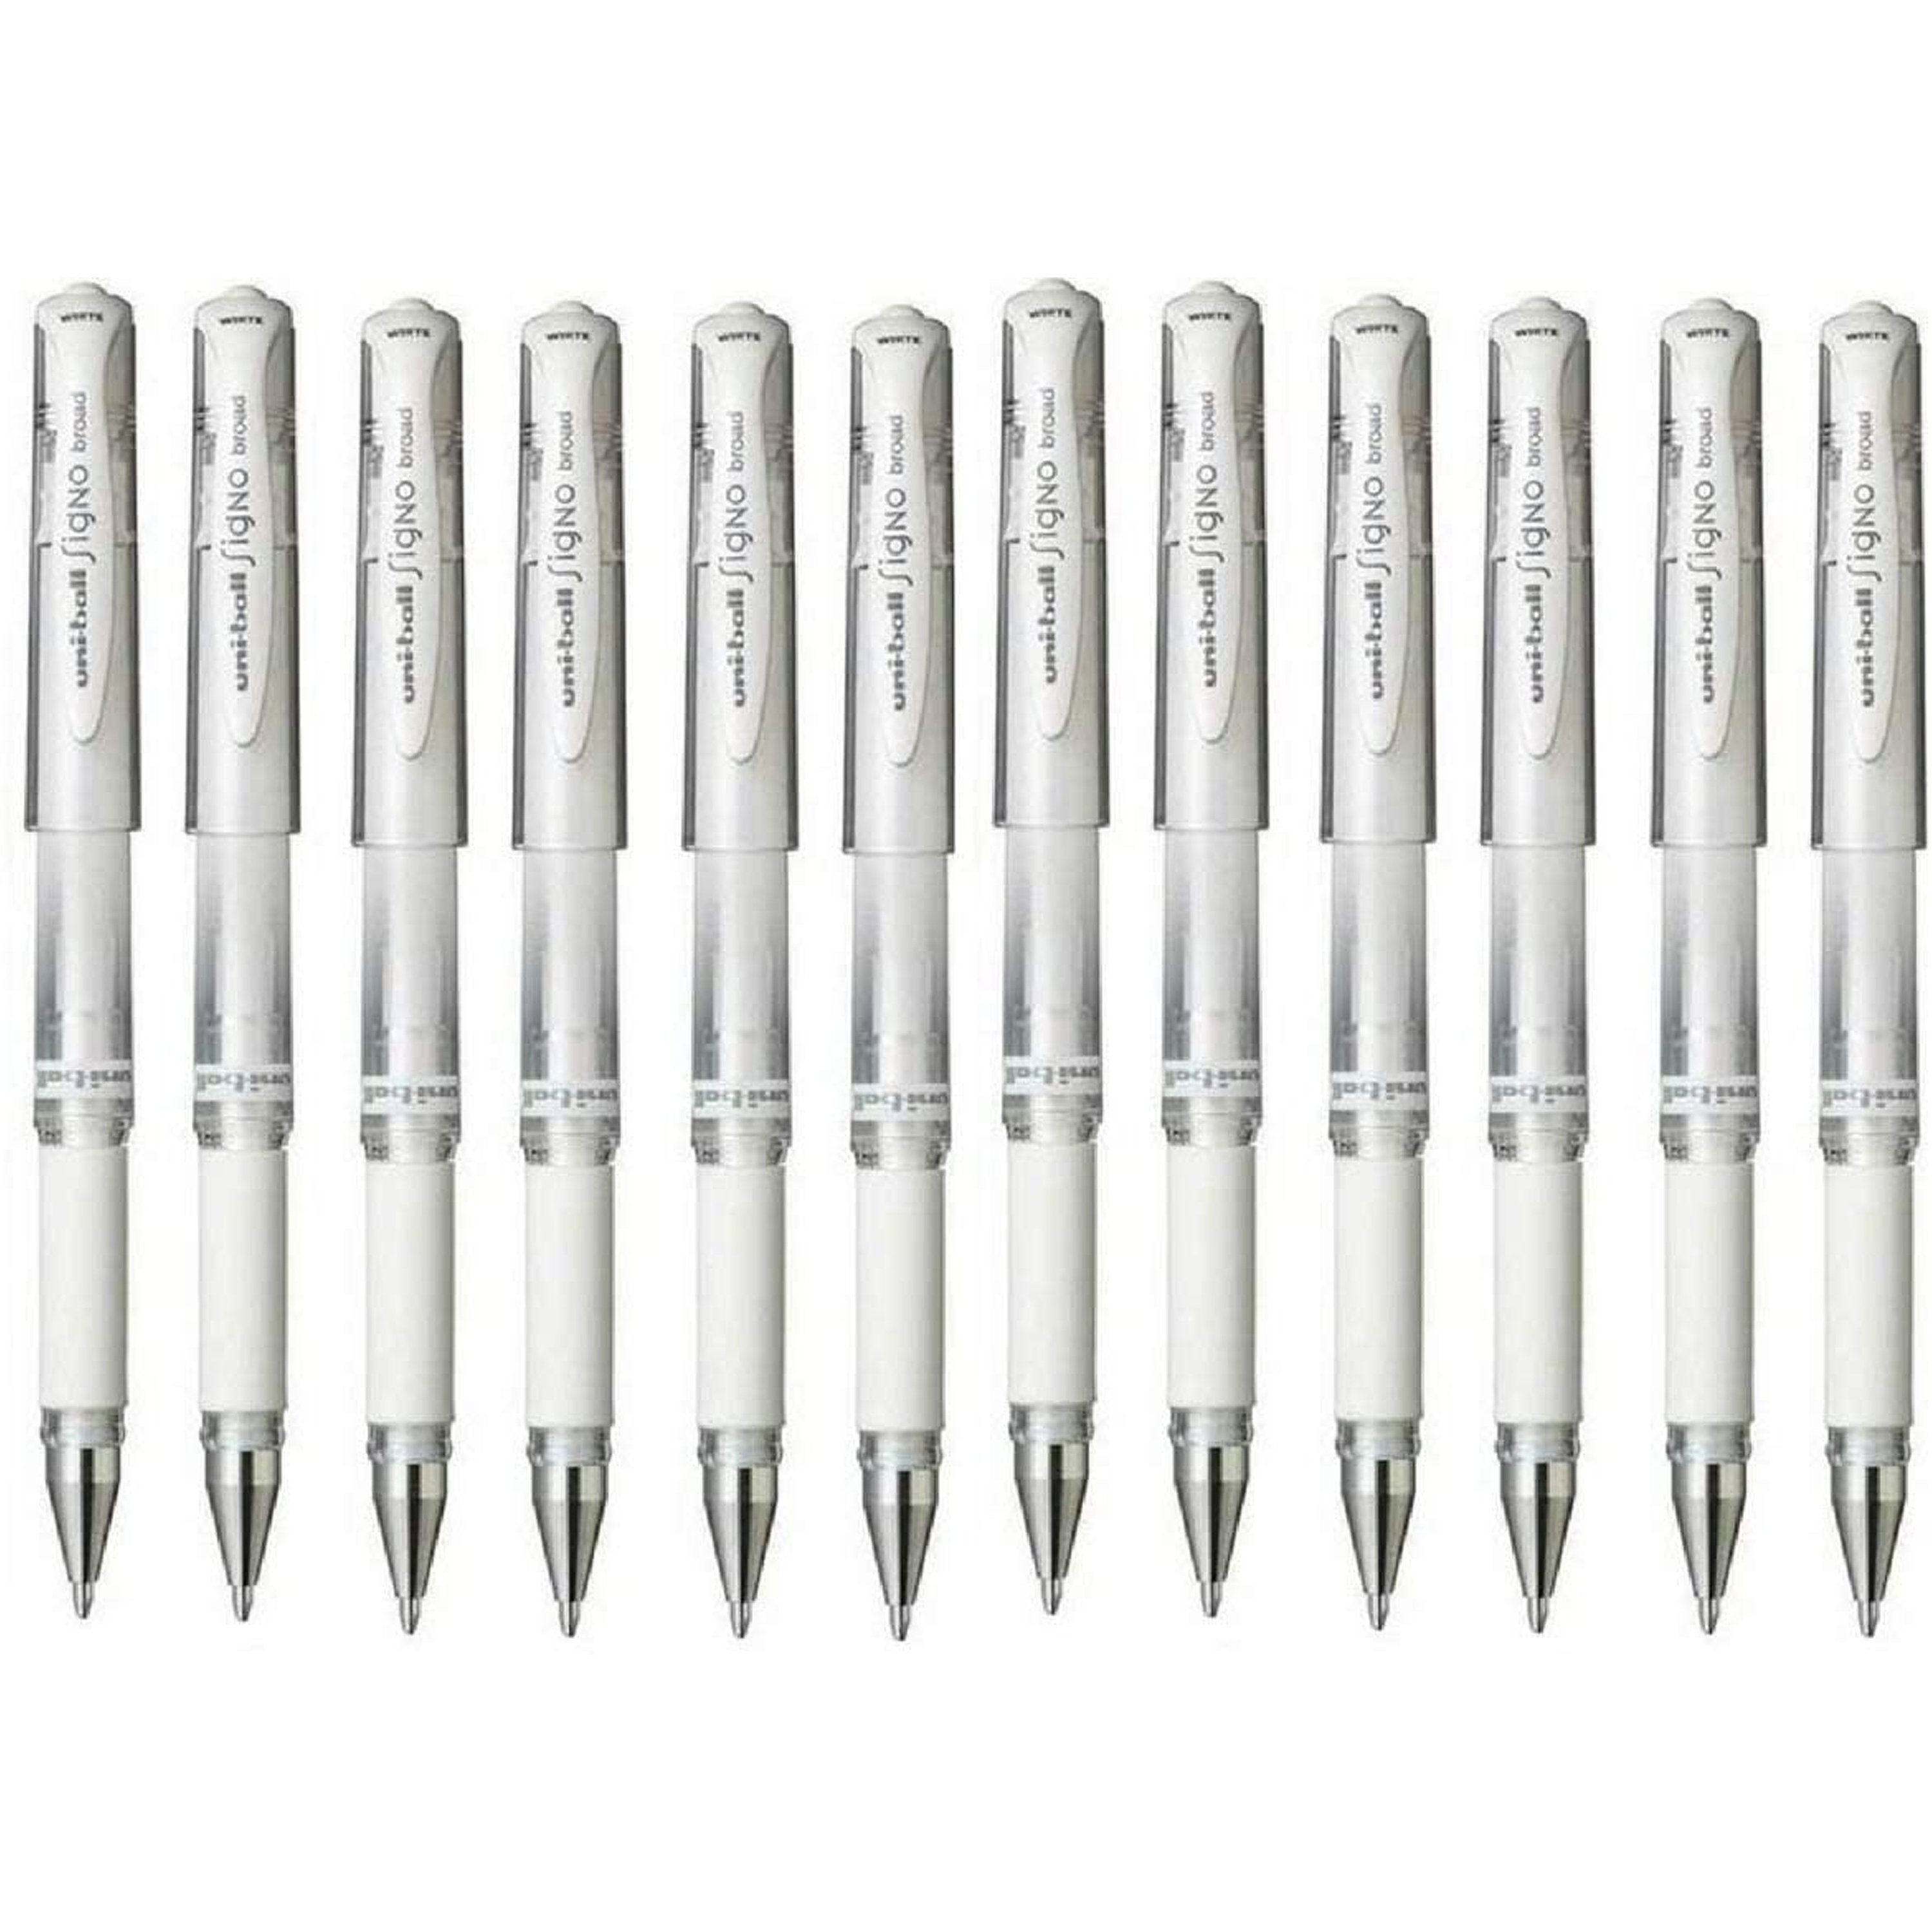 Pentel Superb Ball Pen Fine - 0.7mm Tip - 0.25mm Line - BK77-A - Black -  Pack of 12